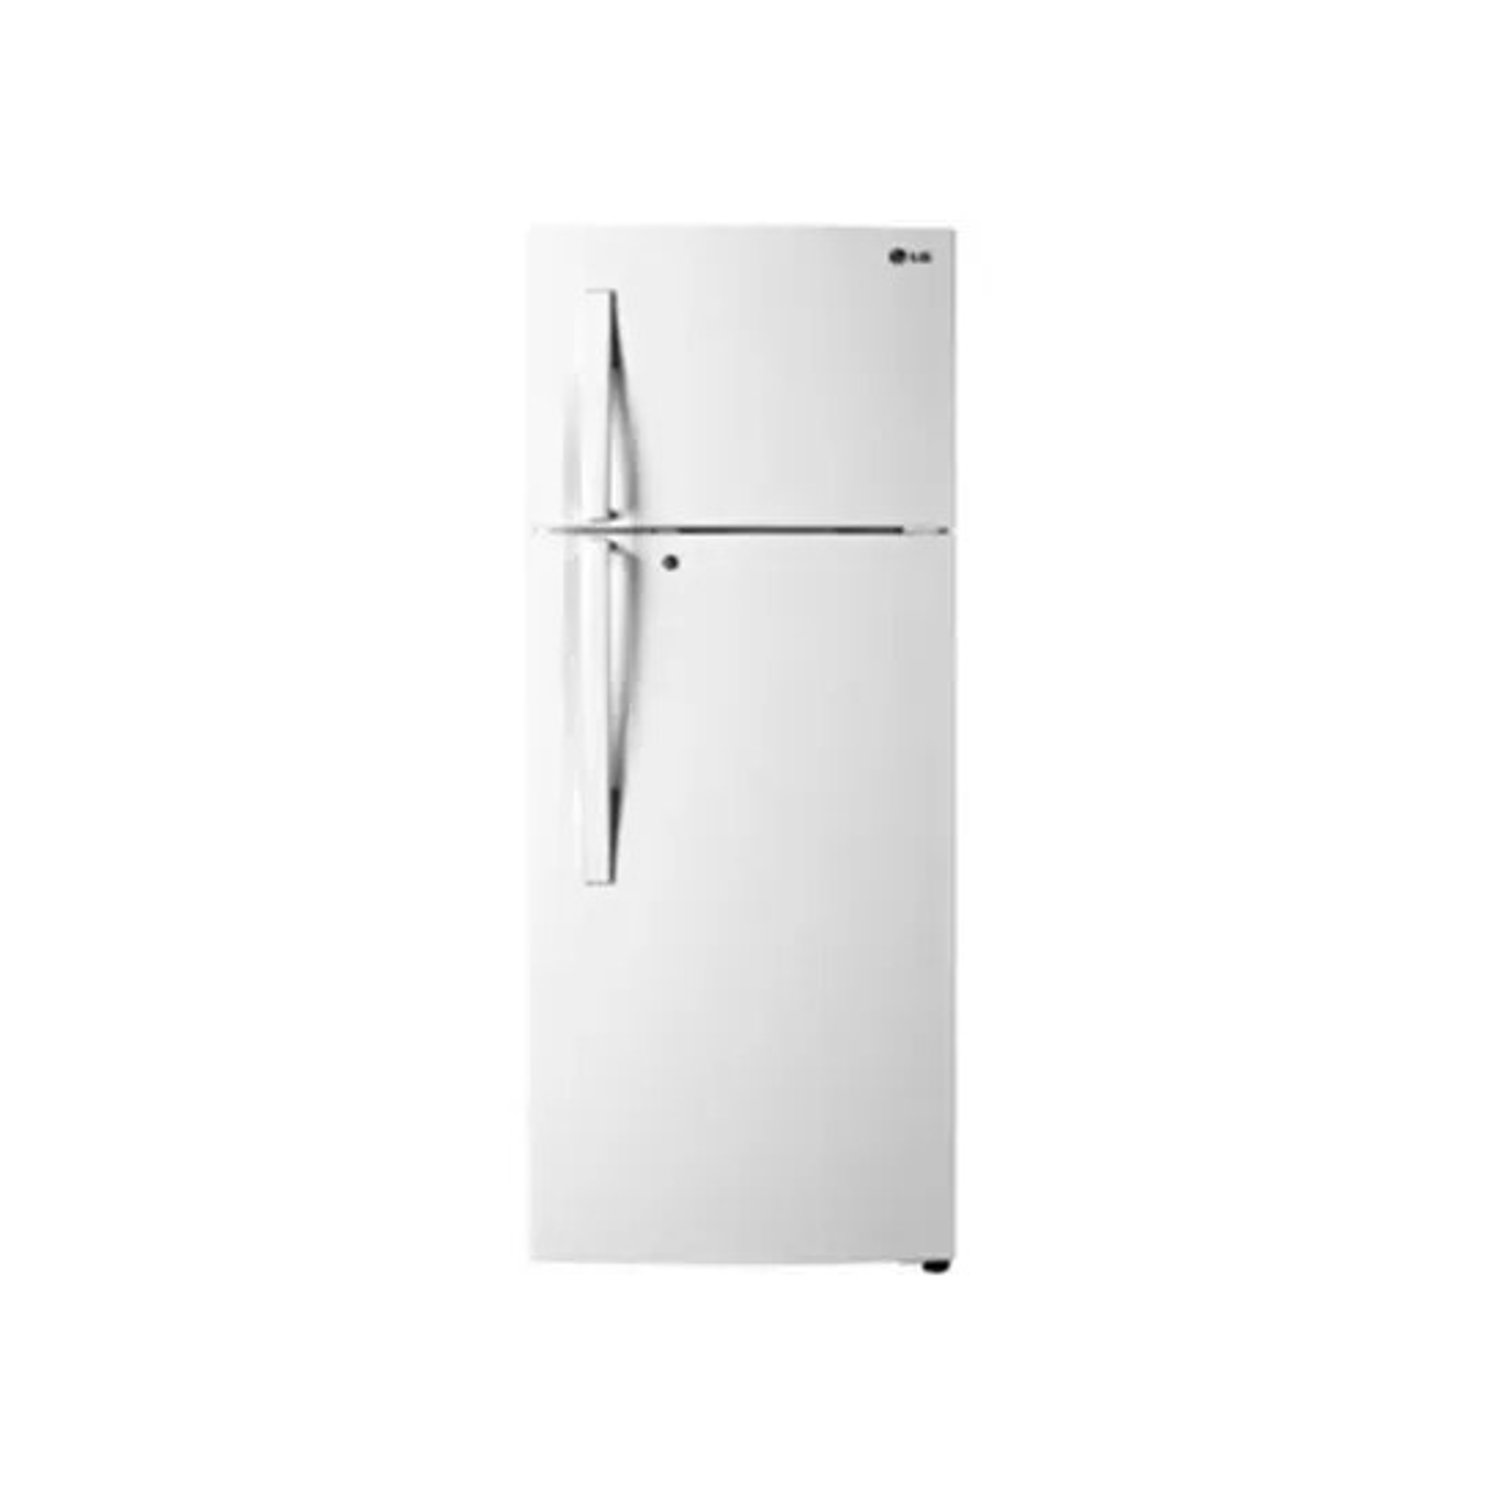 LG 372-Liter Double Door Refrigerator GLC372